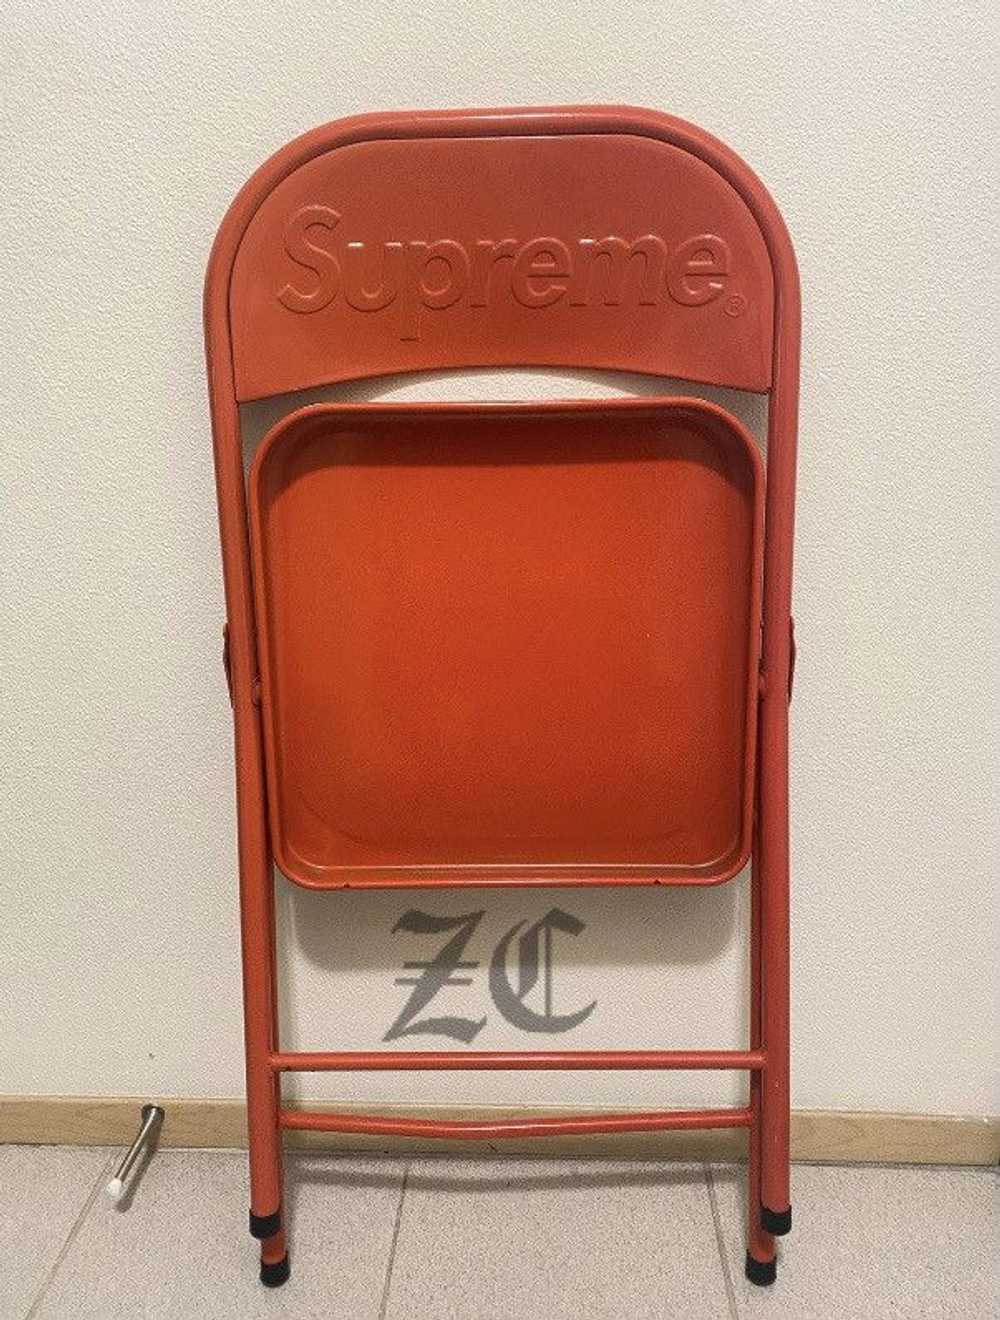 Supreme Supreme folding metal chair - image 1